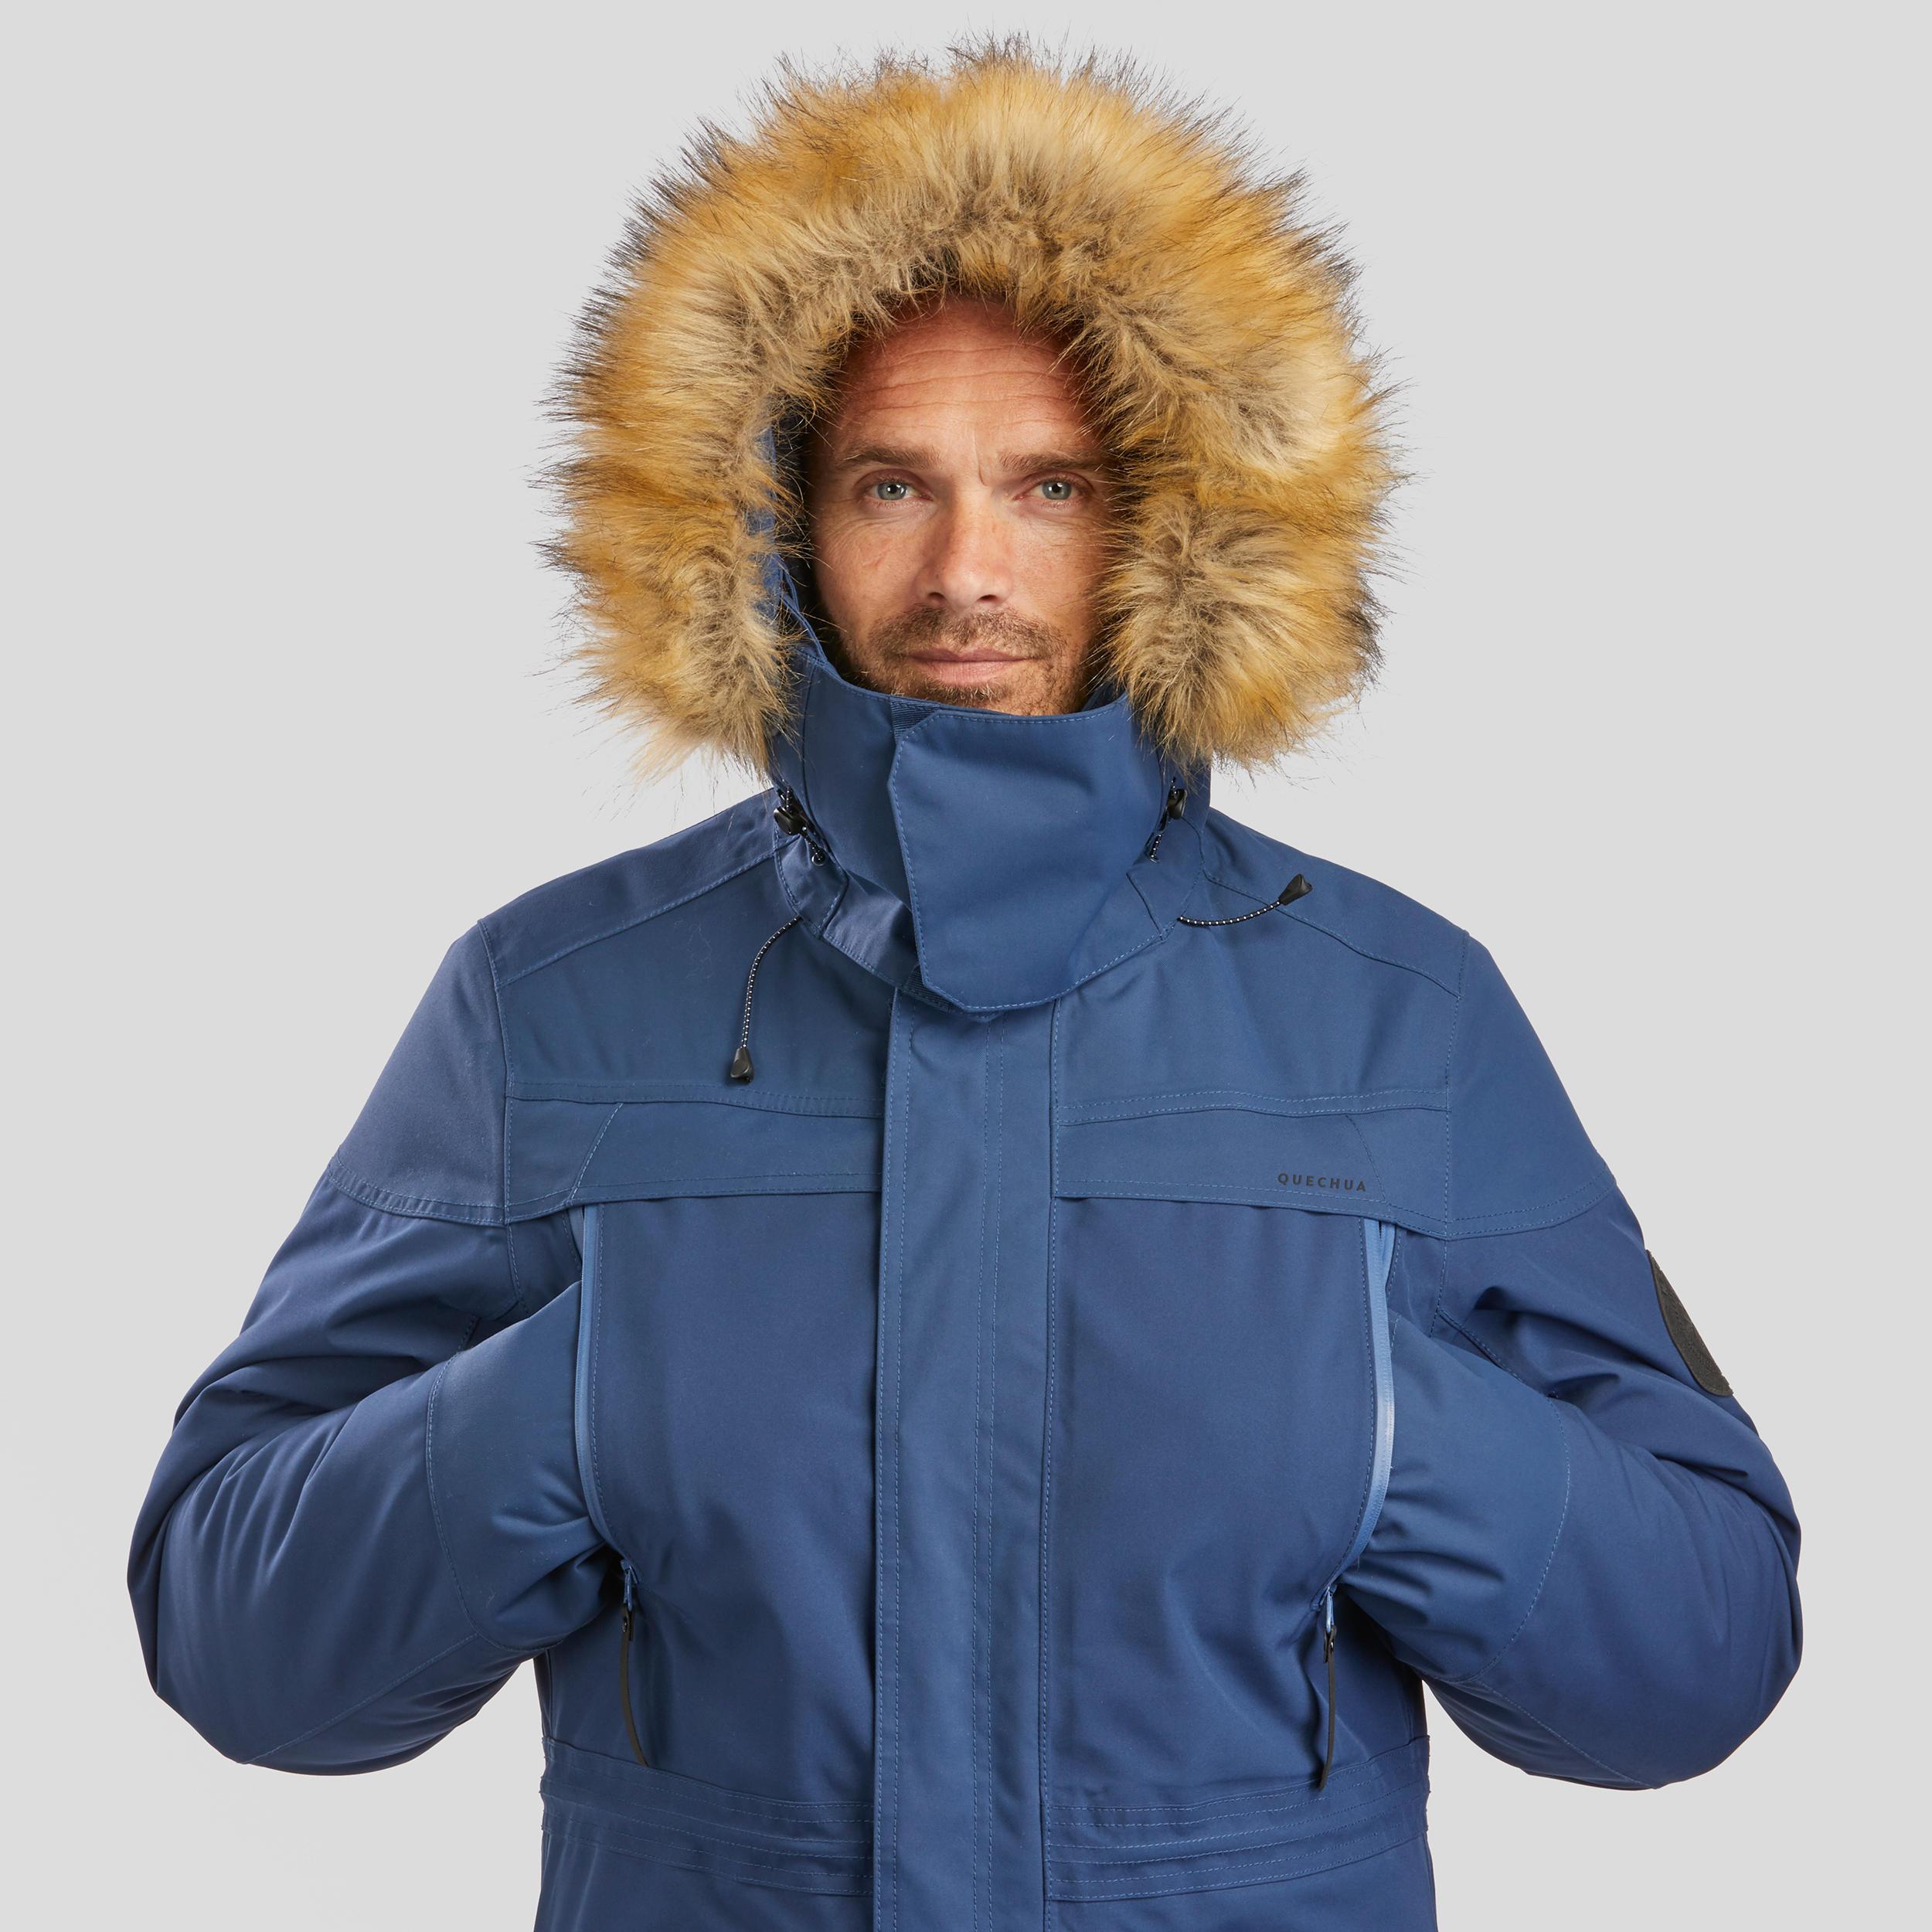 Veste hiver imperméable de randonnée - SH500 -10°C - homme - Maroc, achat  en ligne